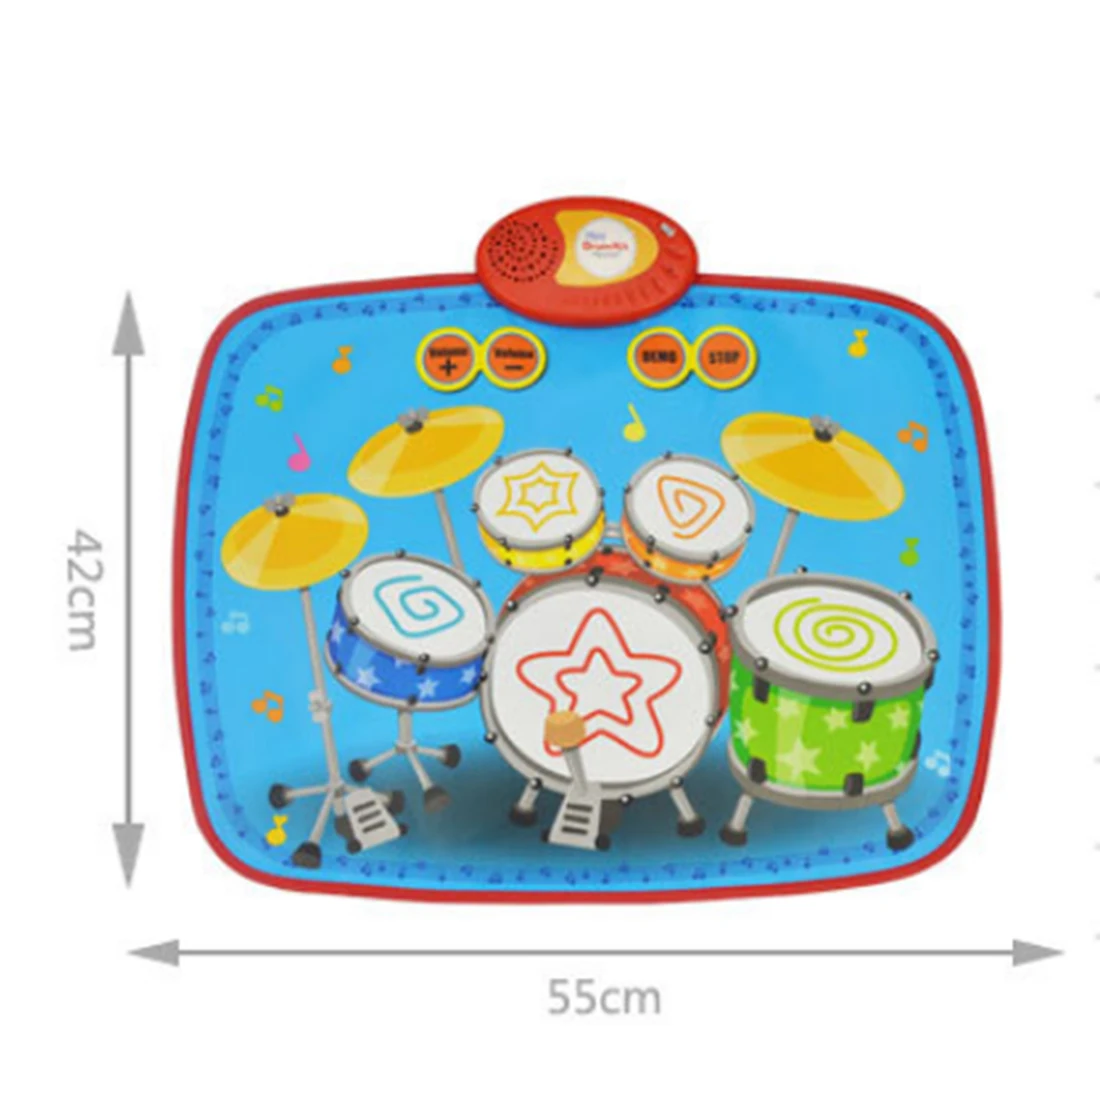 Детская ударная мини-установка музыкальный сенсорный игровой коврик Детский развивающий музыкальный ковер детская игрушка подарок с 2 барабанными палочками